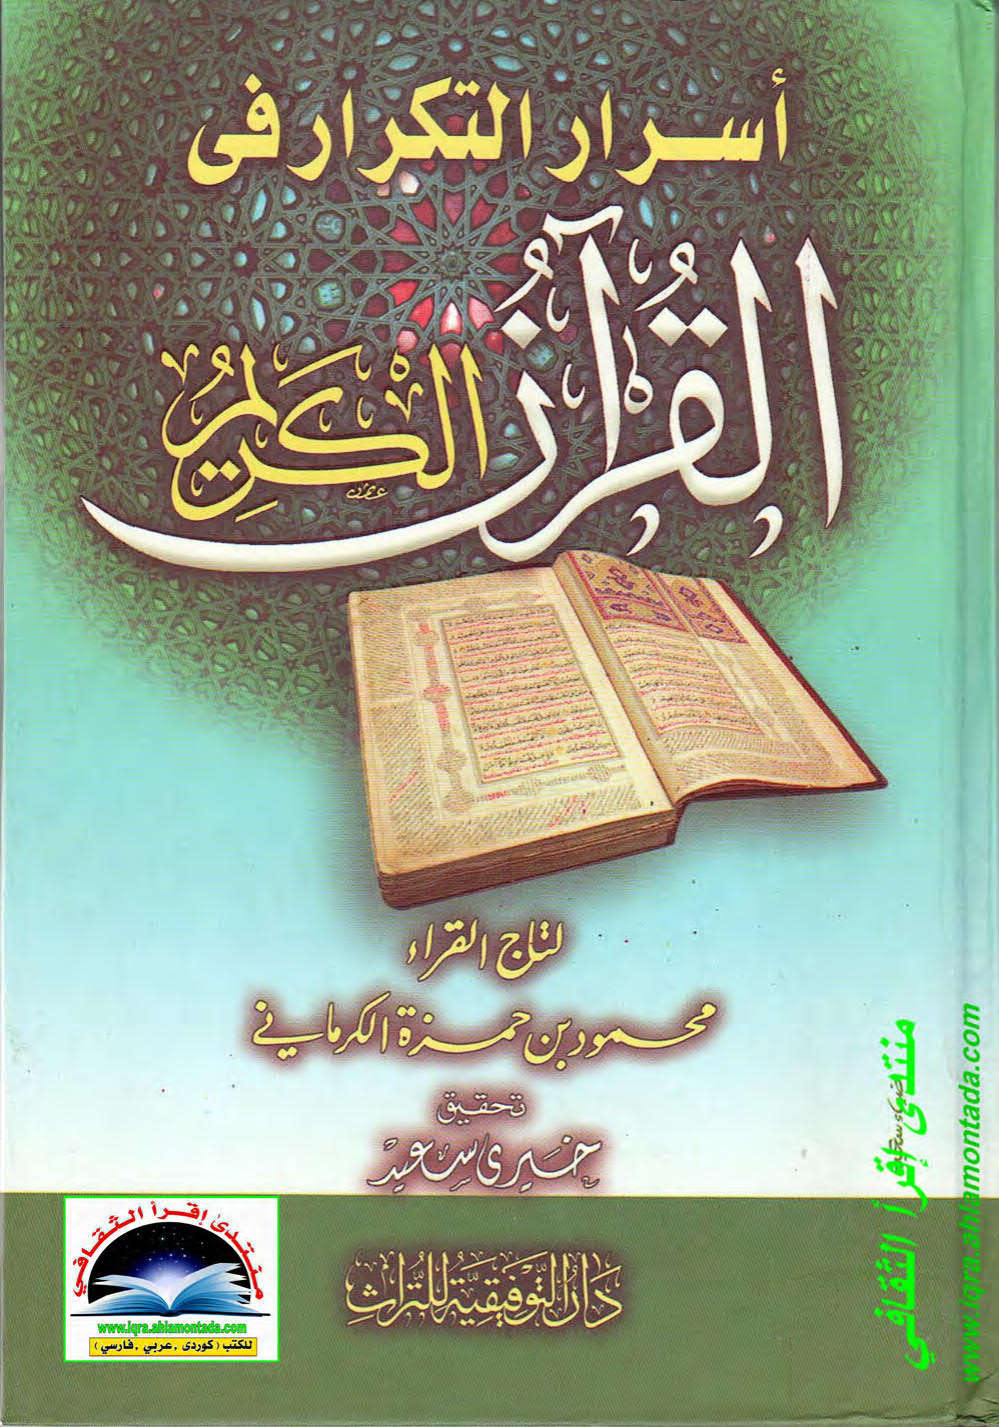 أسرار التكرار في القرآن الكريم لتاج القراء محمود بن حمزة الكرماني ( ت : خيري سعيد )